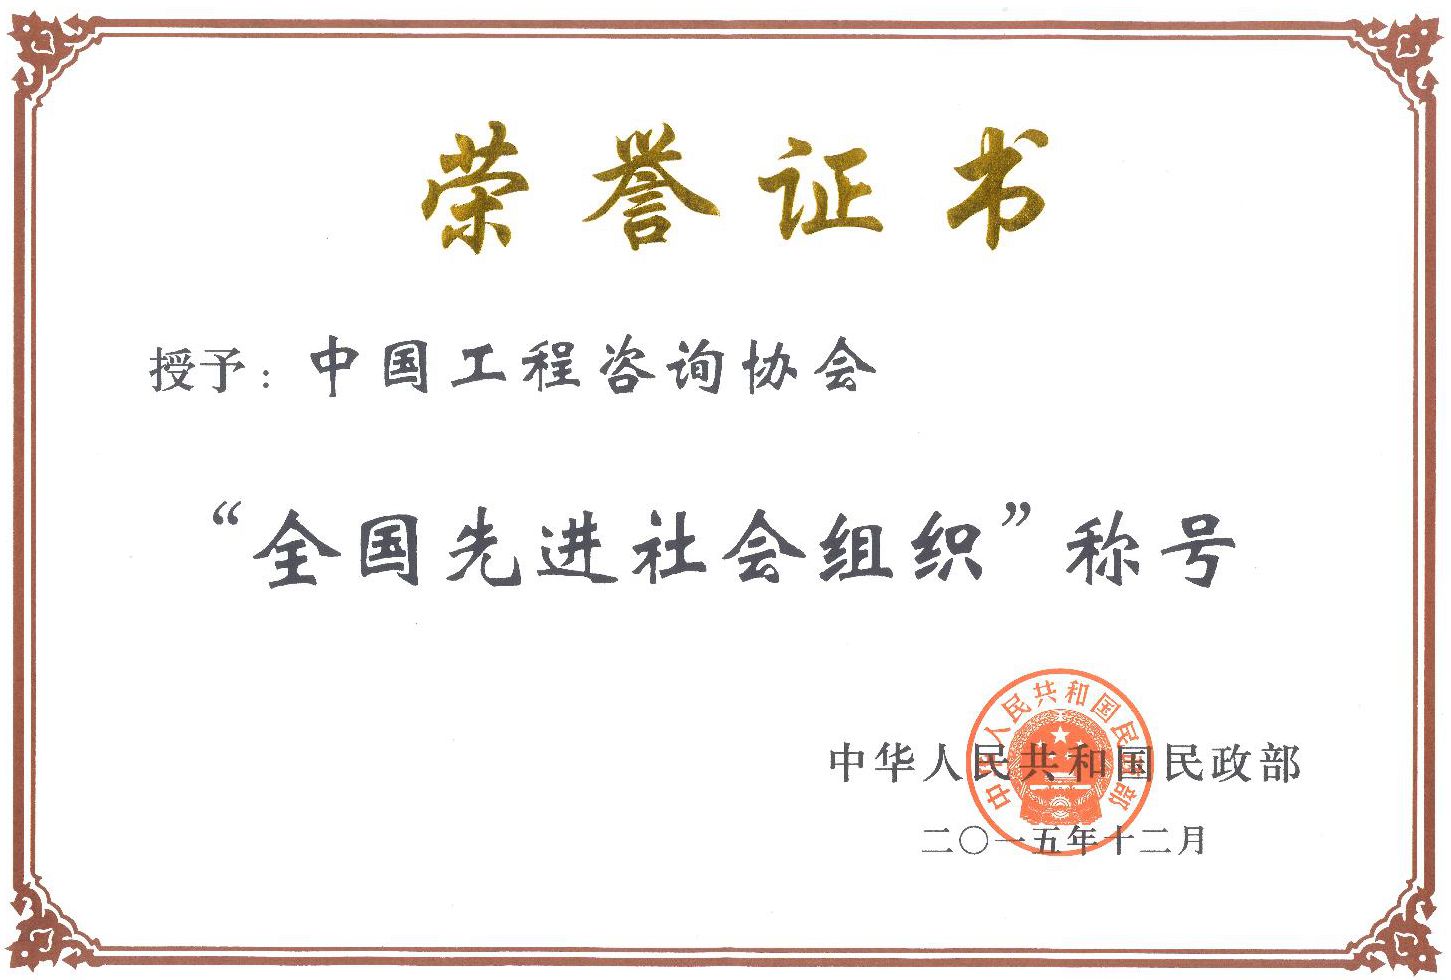 中咨协会“全国先进社会组织称号”荣誉证书jpg_Page1.jpg